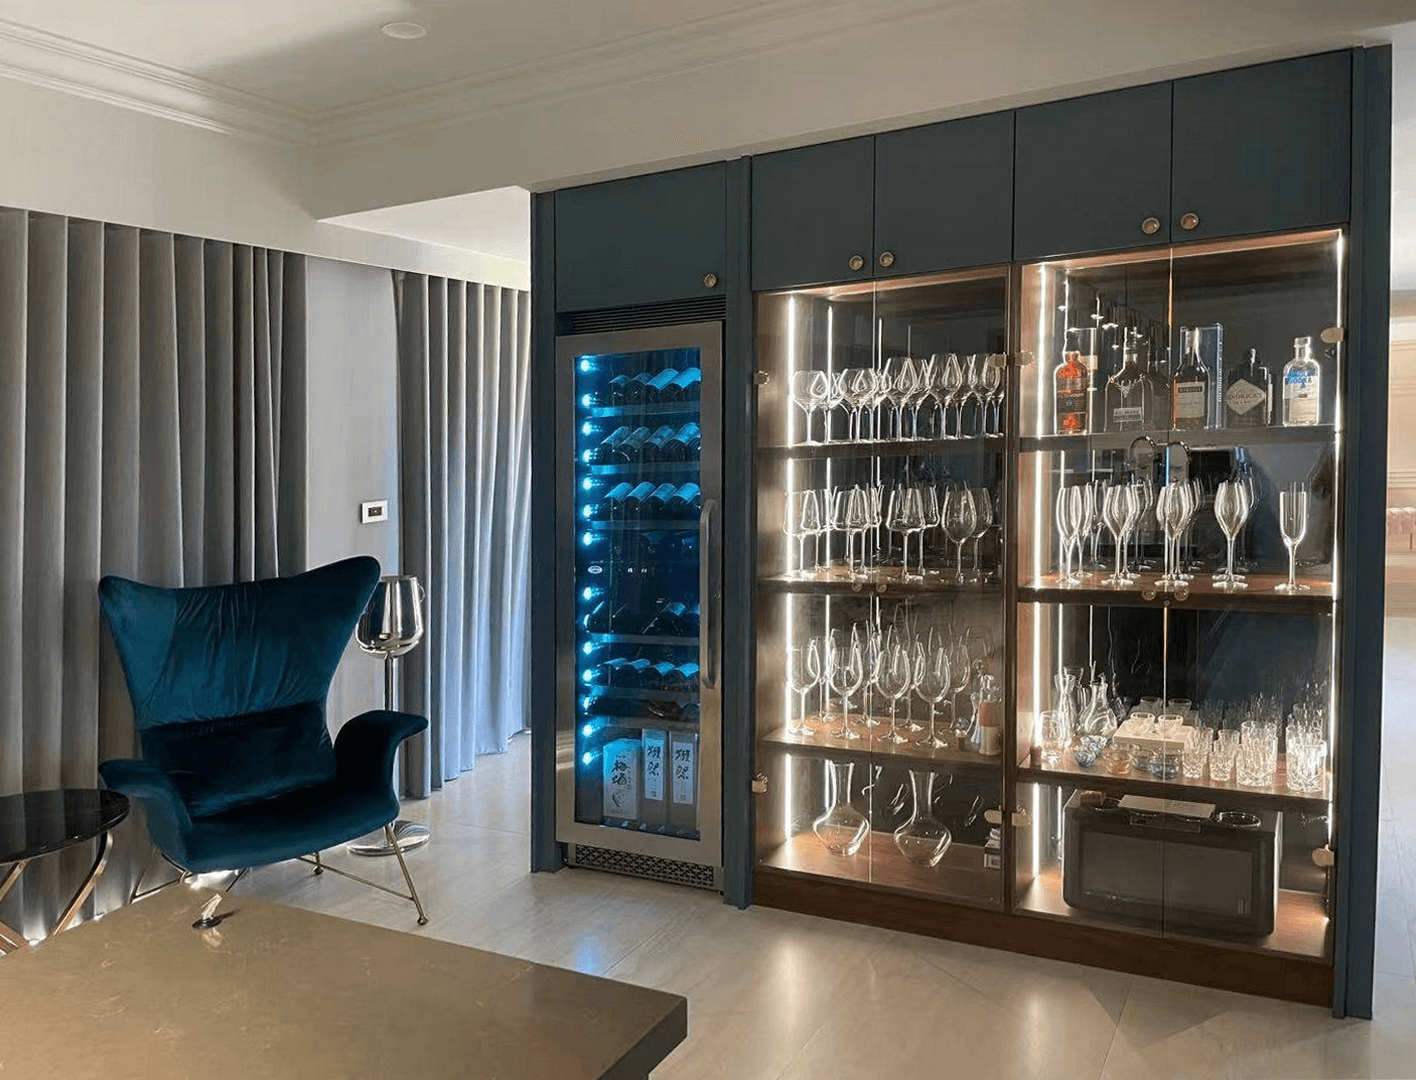 DV-568DSD in a Wine Tasting Room in Residential Space